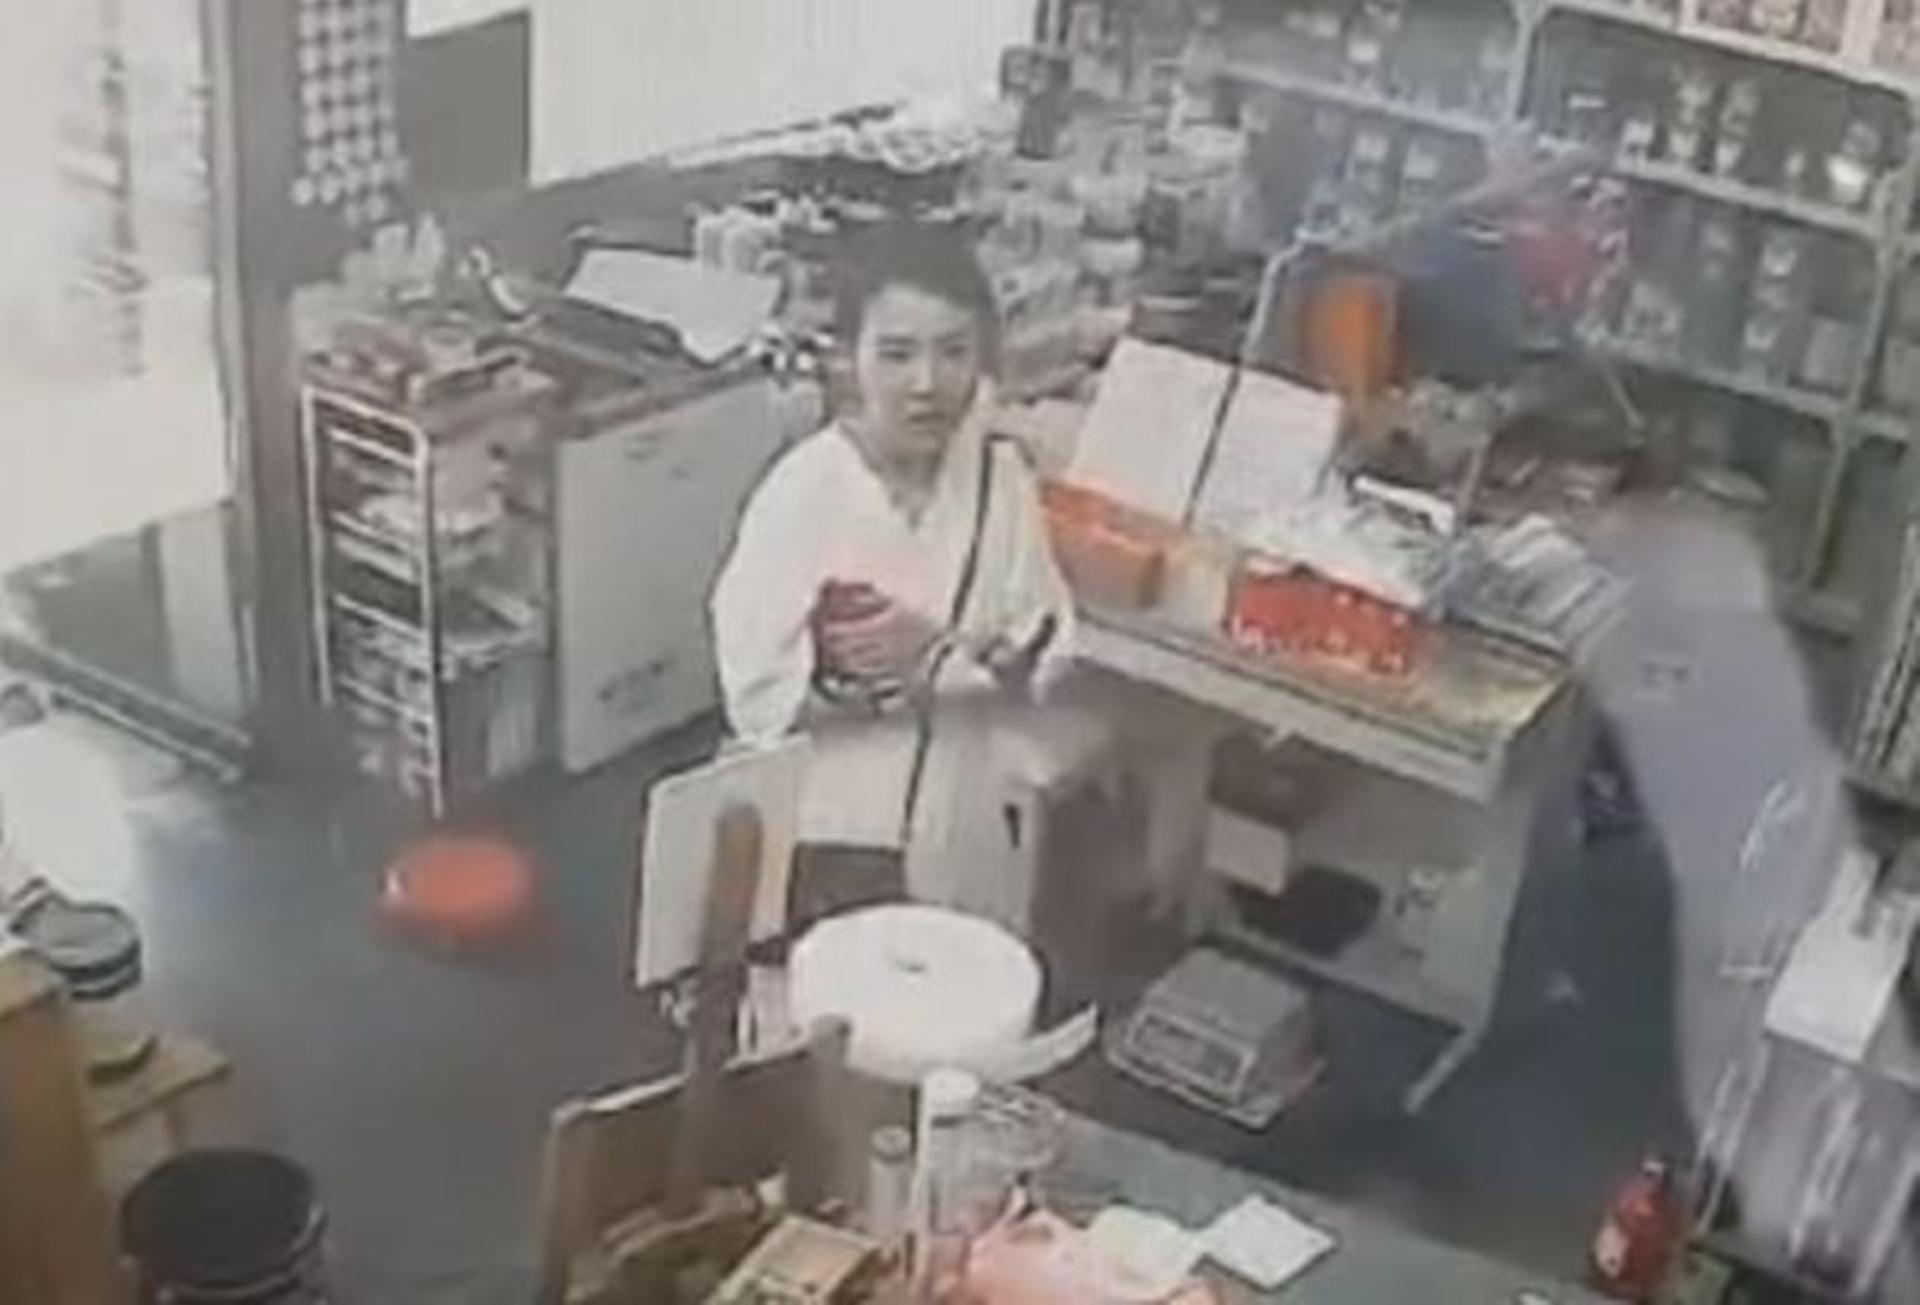 Camera giám sát ghi lại cảnh Koh Yu-jeong đi siêu thị mua đồ được cho là để sử dụng trong quá trình gây án.